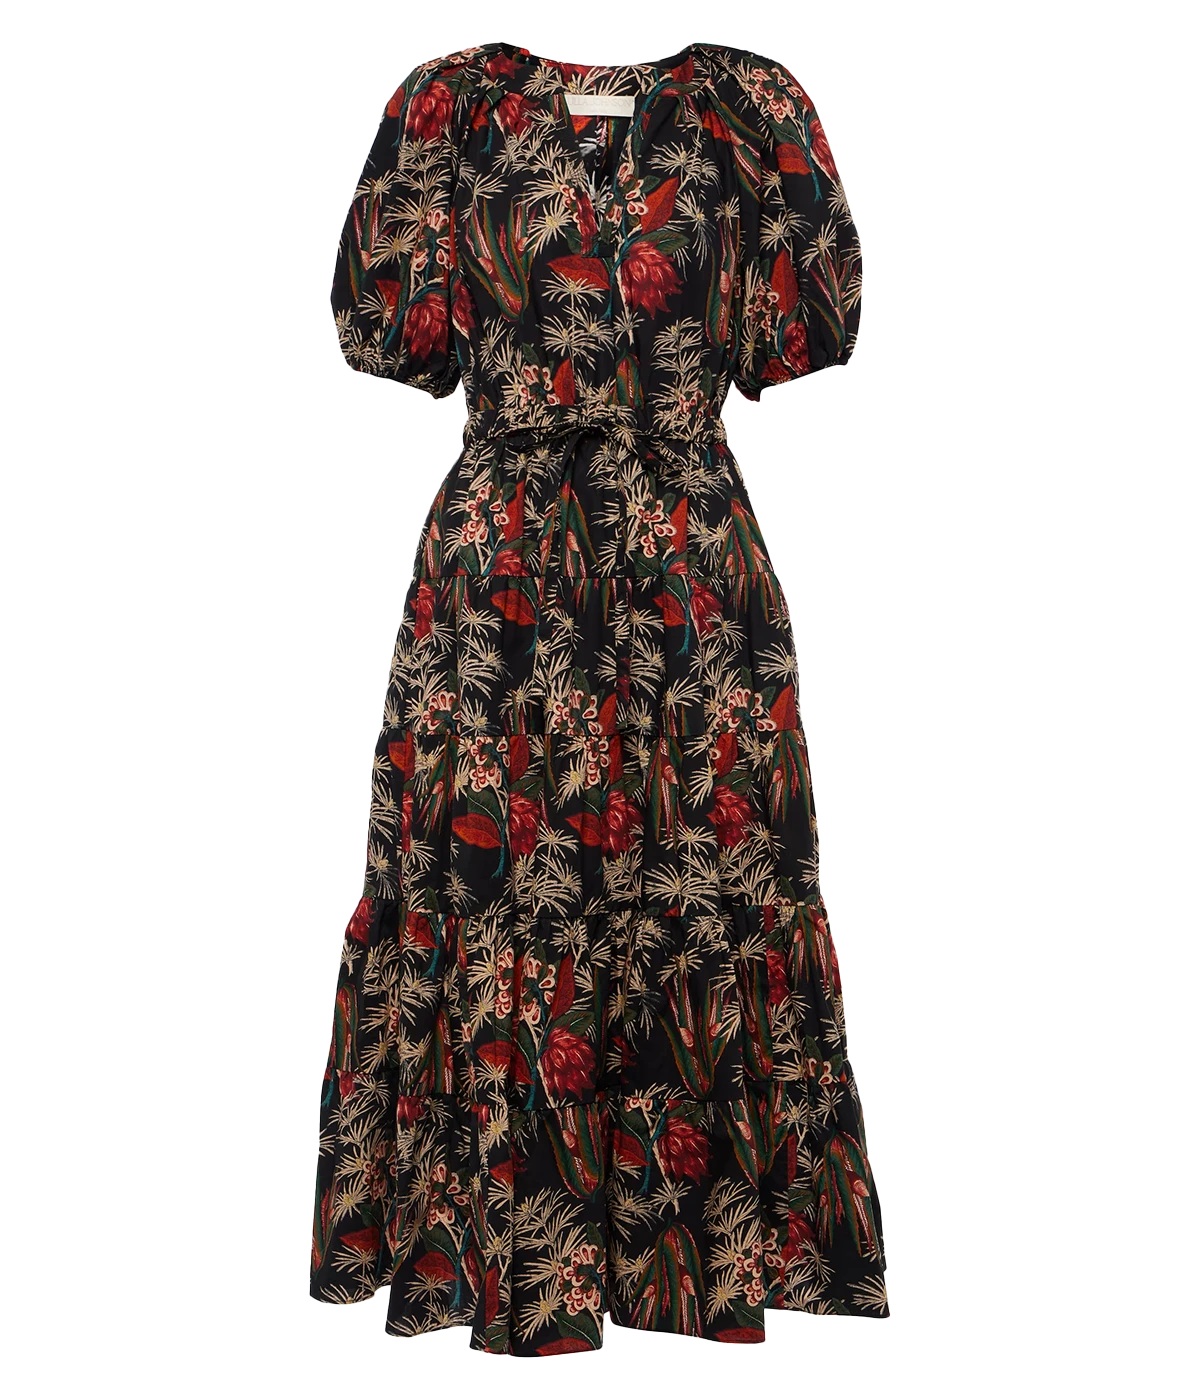 Olina Dress in Anthurium